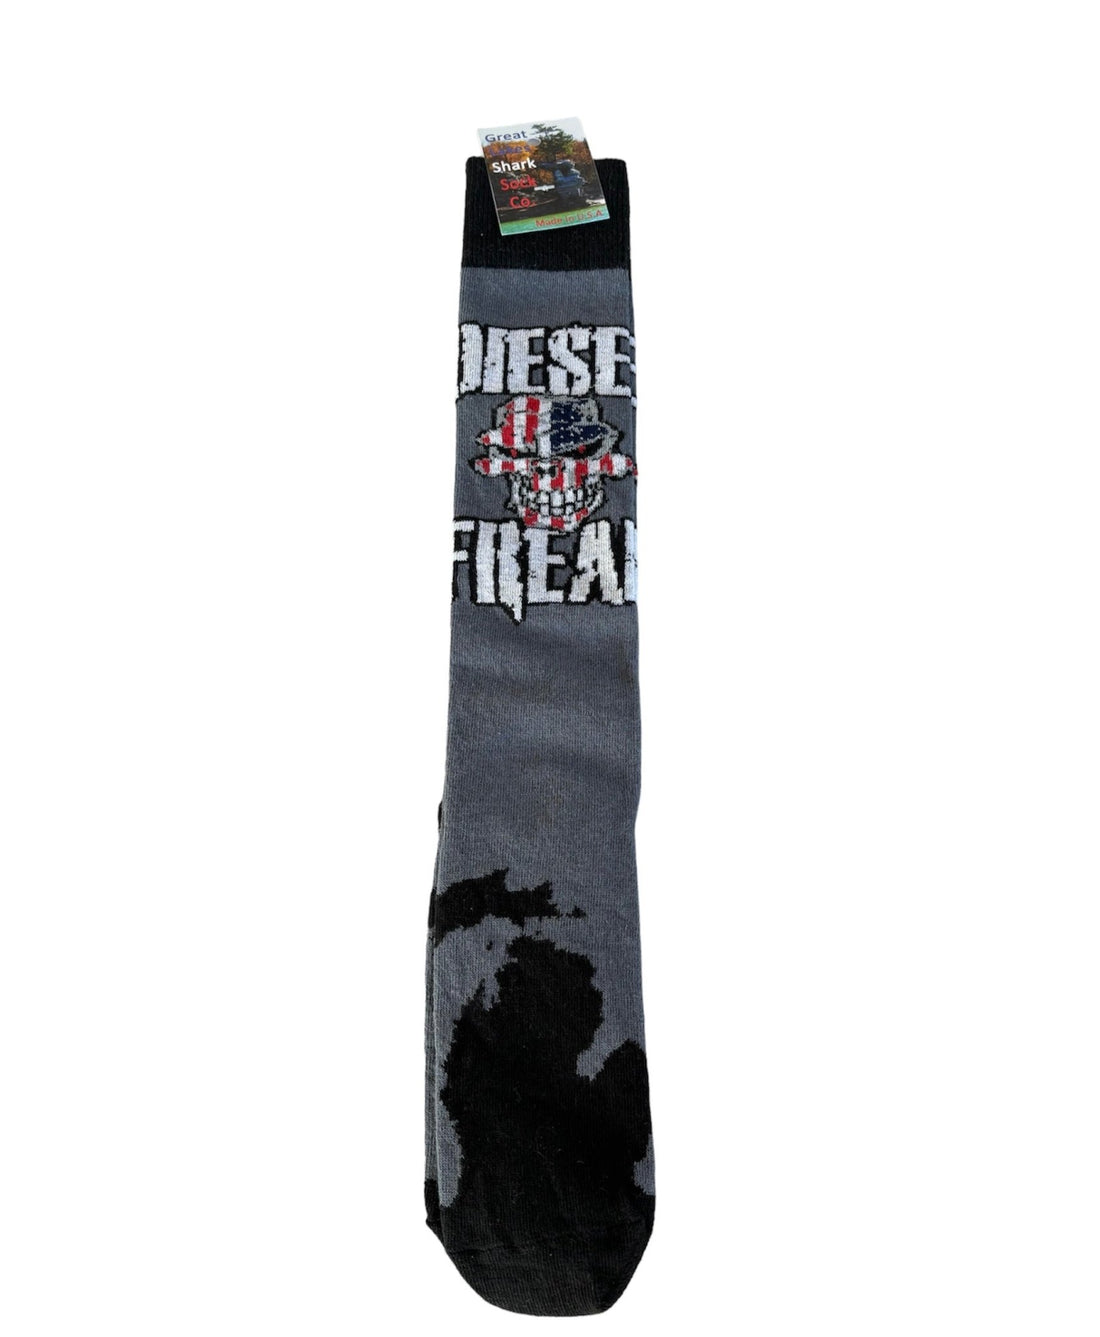 Diesel Freak Socks - Diesel Freak